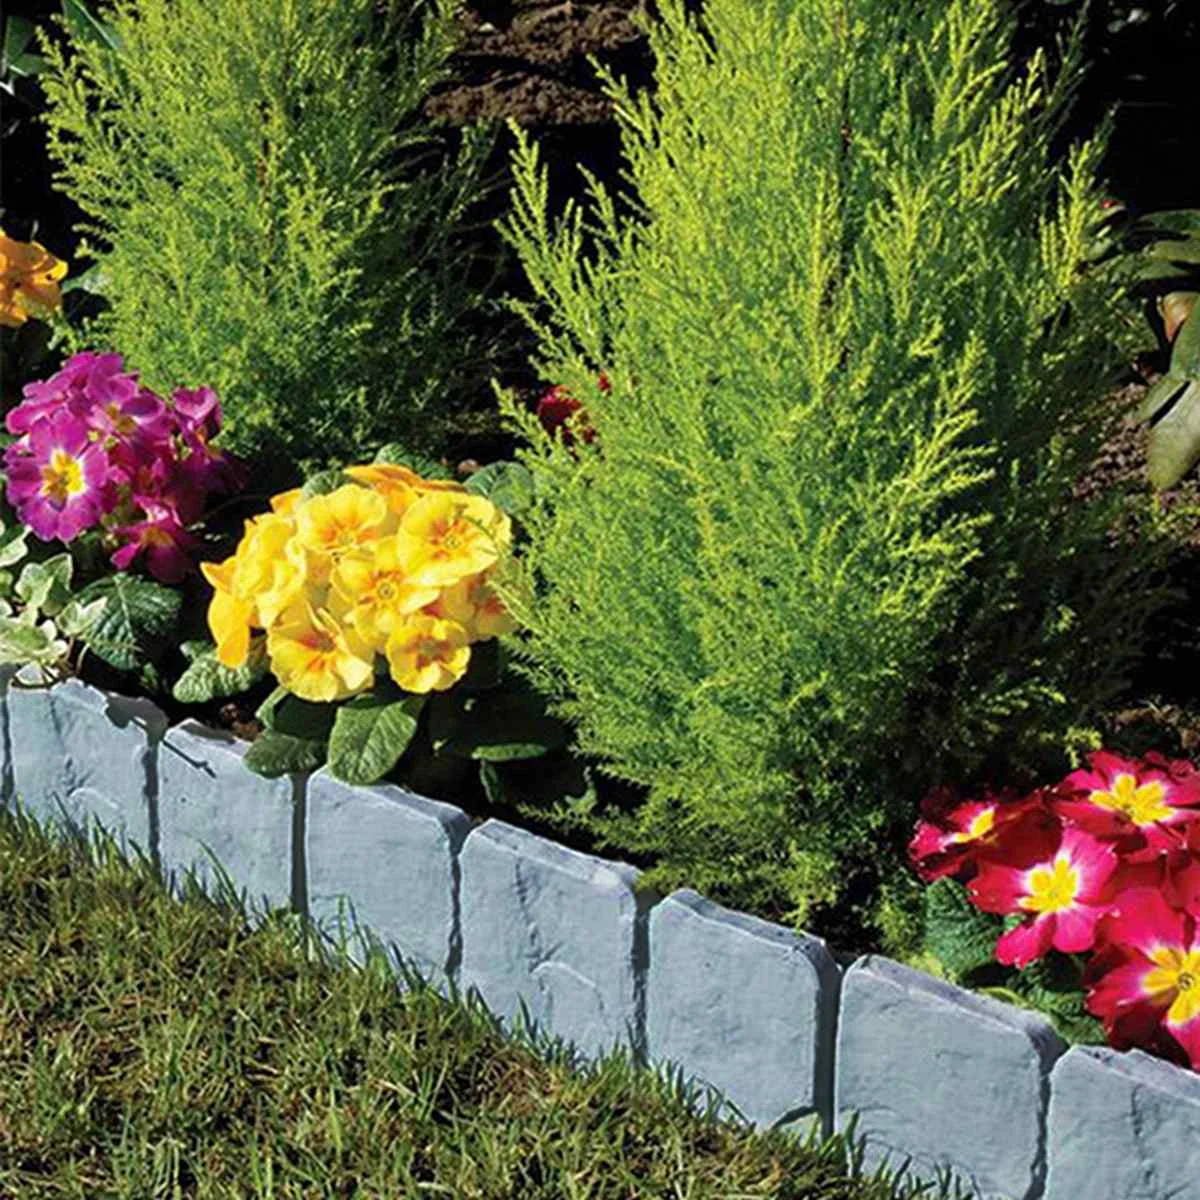 

10pcs Folding Landscape Garden Fence-Path Gray Orange Flower Plant Border Edging Lawn Imitation Stone Fence Grounding Fence